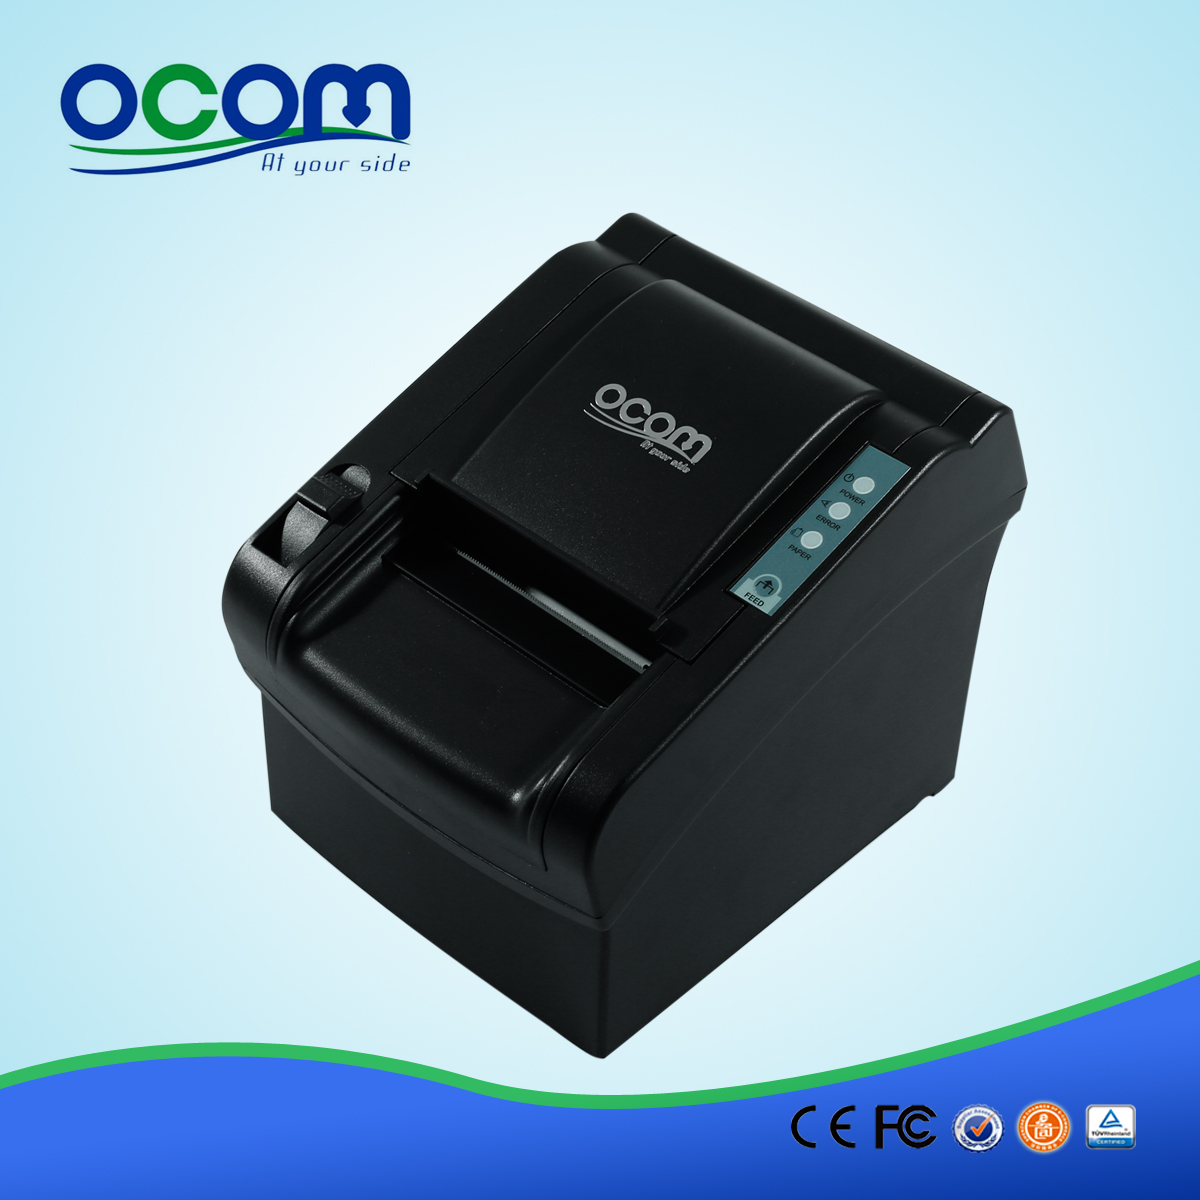 OCPP-802: module d'alimentation de l'imprimante thermique pas cher, le prix de l'imprimante thermique en Inde